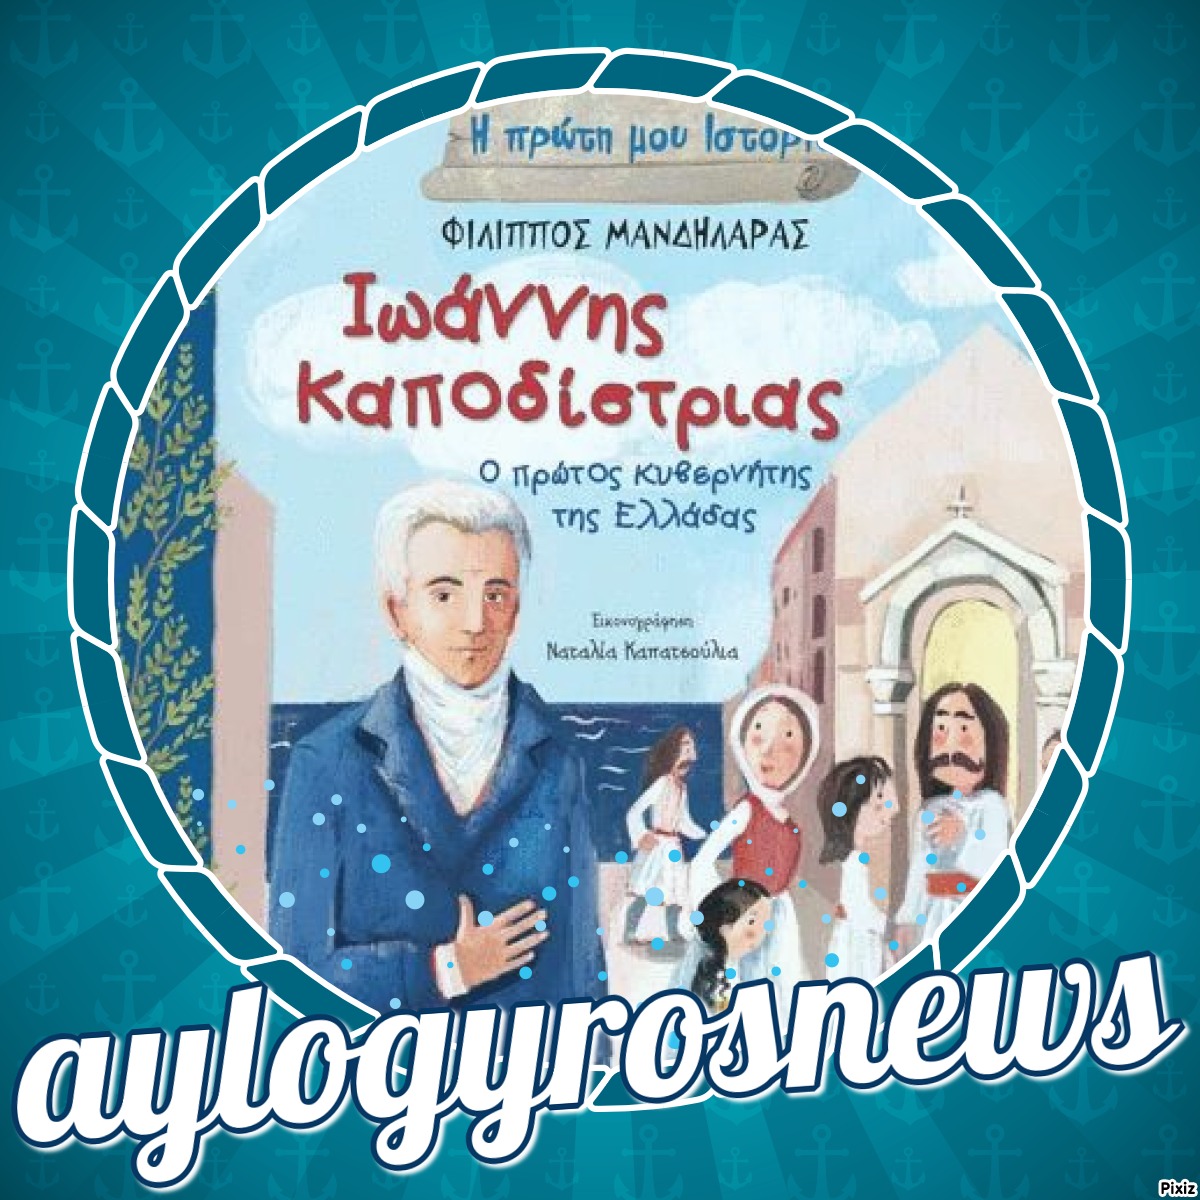 «Ιωάννης Καποδίστριας – Ο πρώτος κυβερνήτης της Ελλάδας» του  Φίλιππου Μανδηλαρά… στην προθήκη της αυλής μας